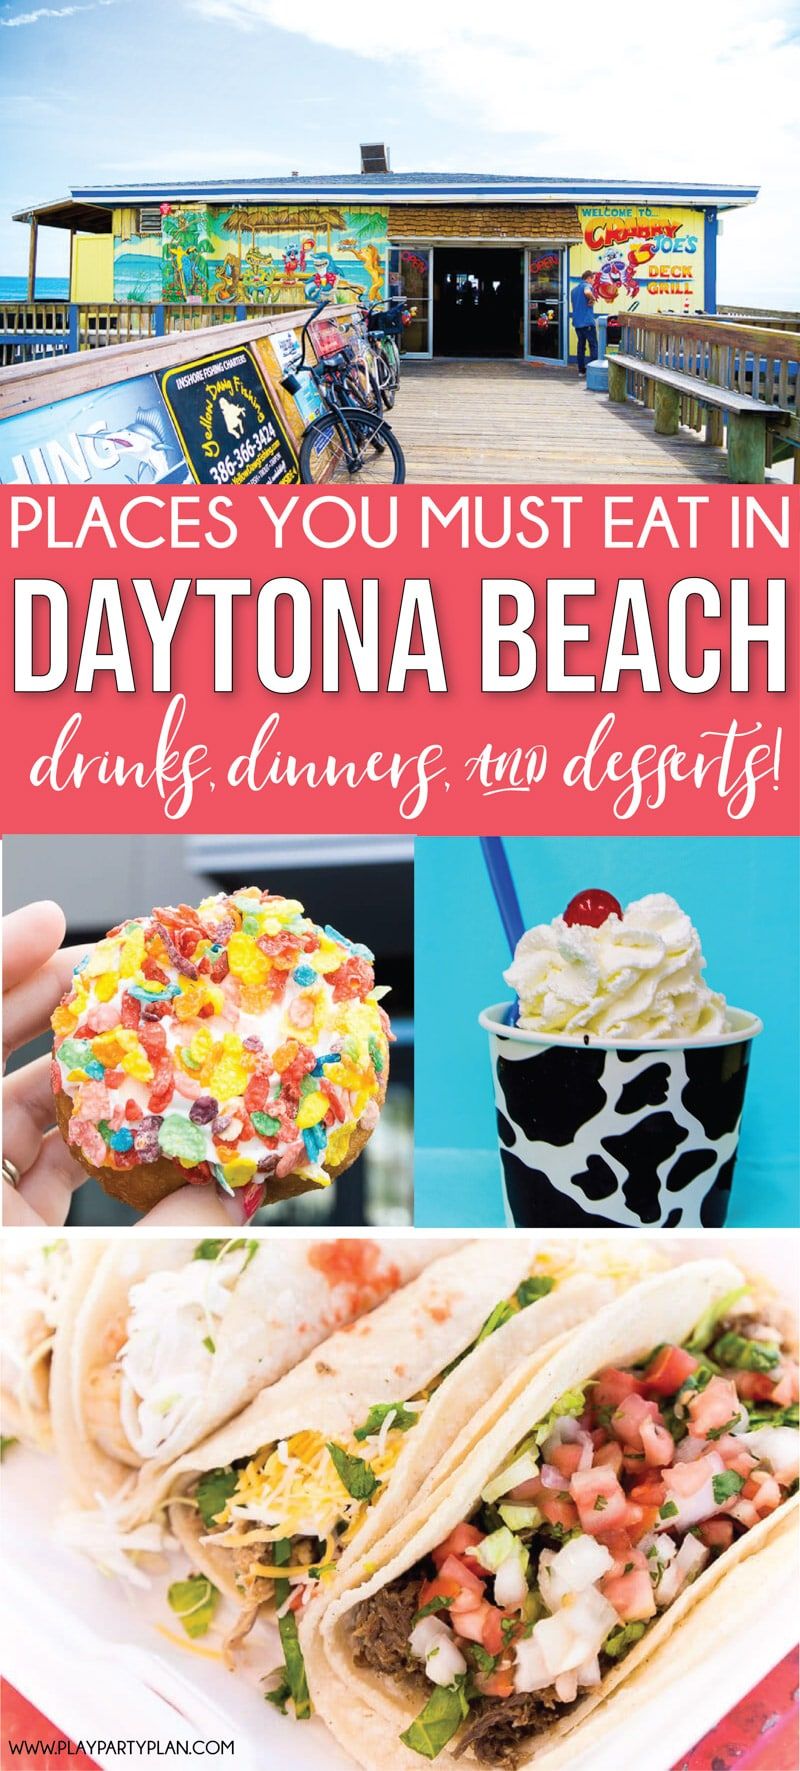 Parhaat ravintolat Daytona Beach Floridassa! Kaikkea ruokaa rantakadulla ruokaan lähellä rantoja!